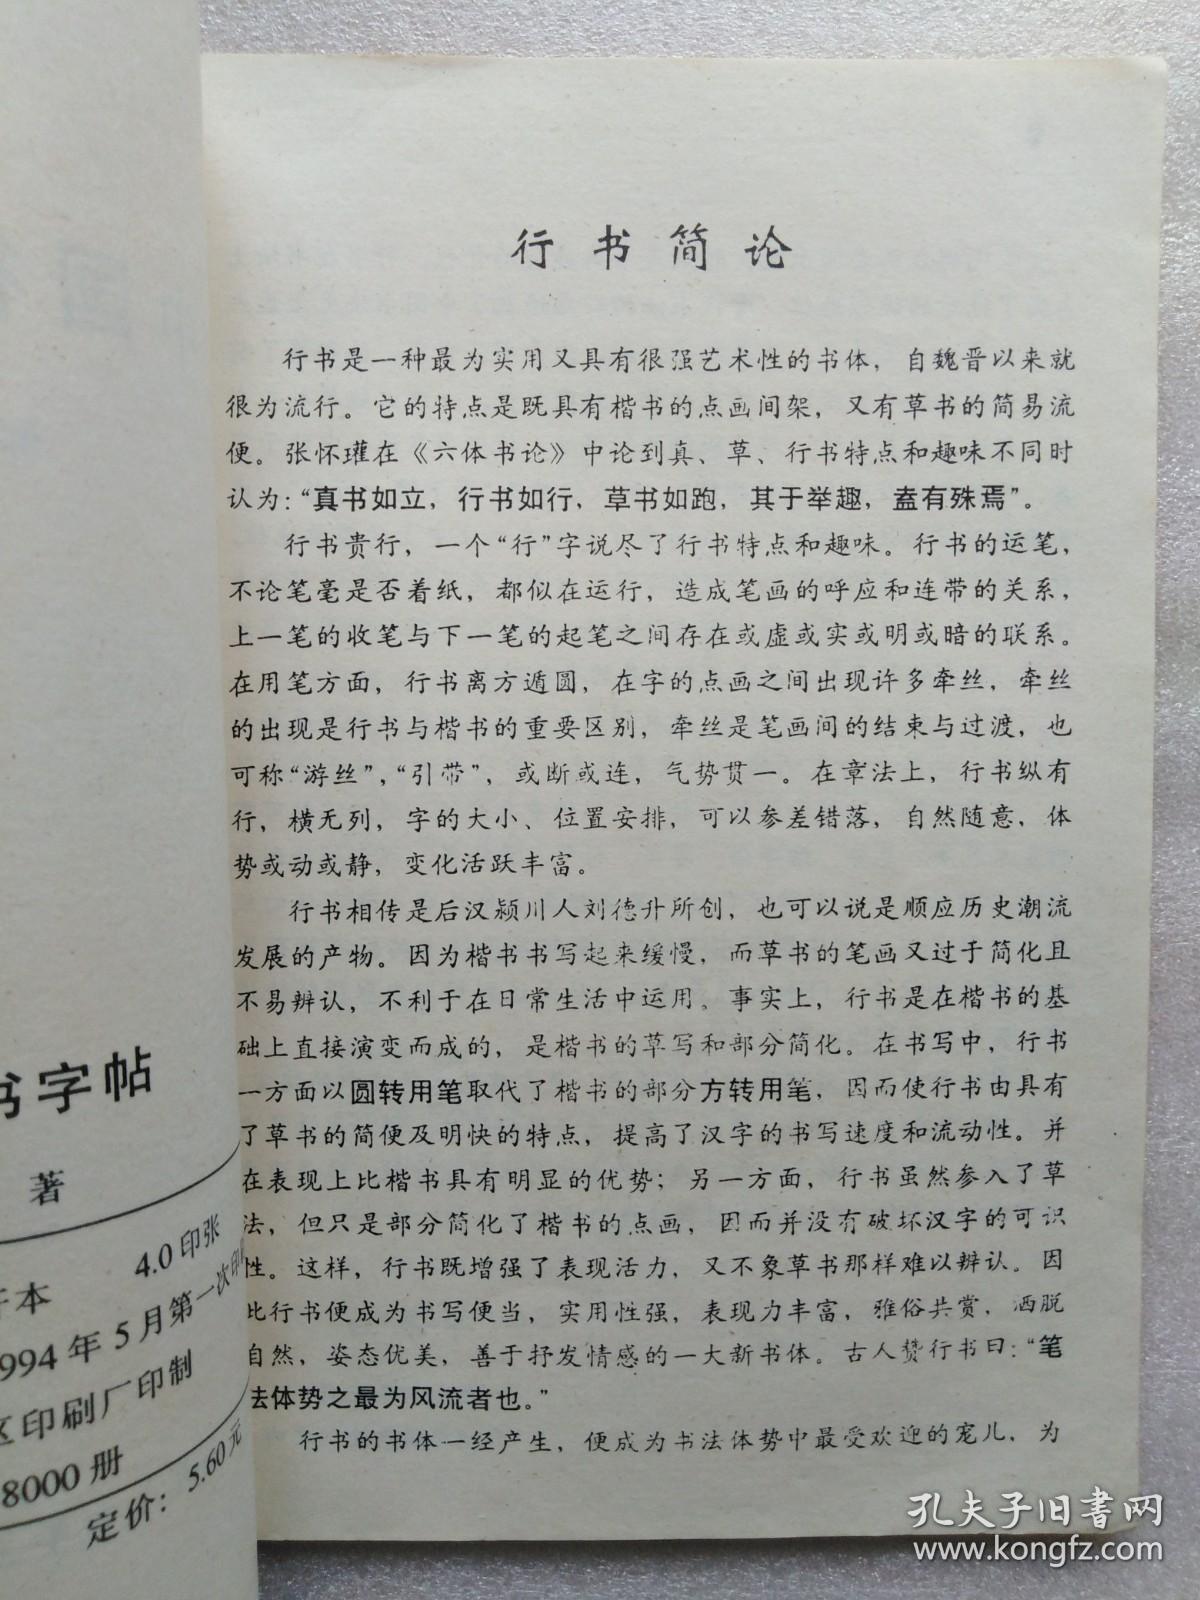 中国行书字帖